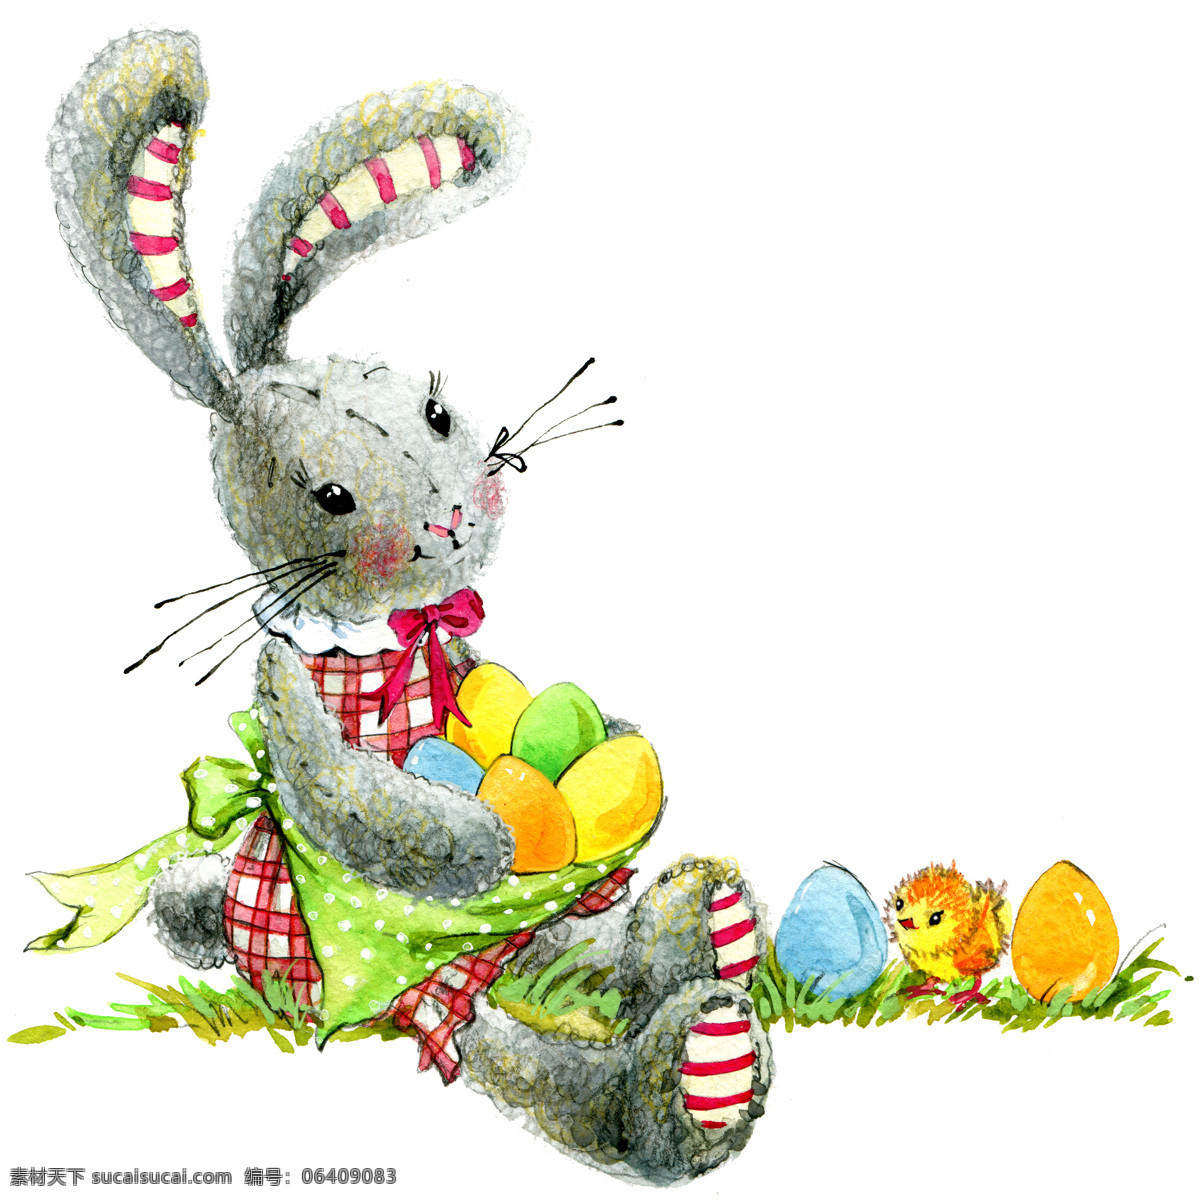 抱 彩蛋 的卡 通 兔子 水彩画 卡通兔子 复活节彩蛋 复活节快乐 复活节素材 节日庆典 生活百科